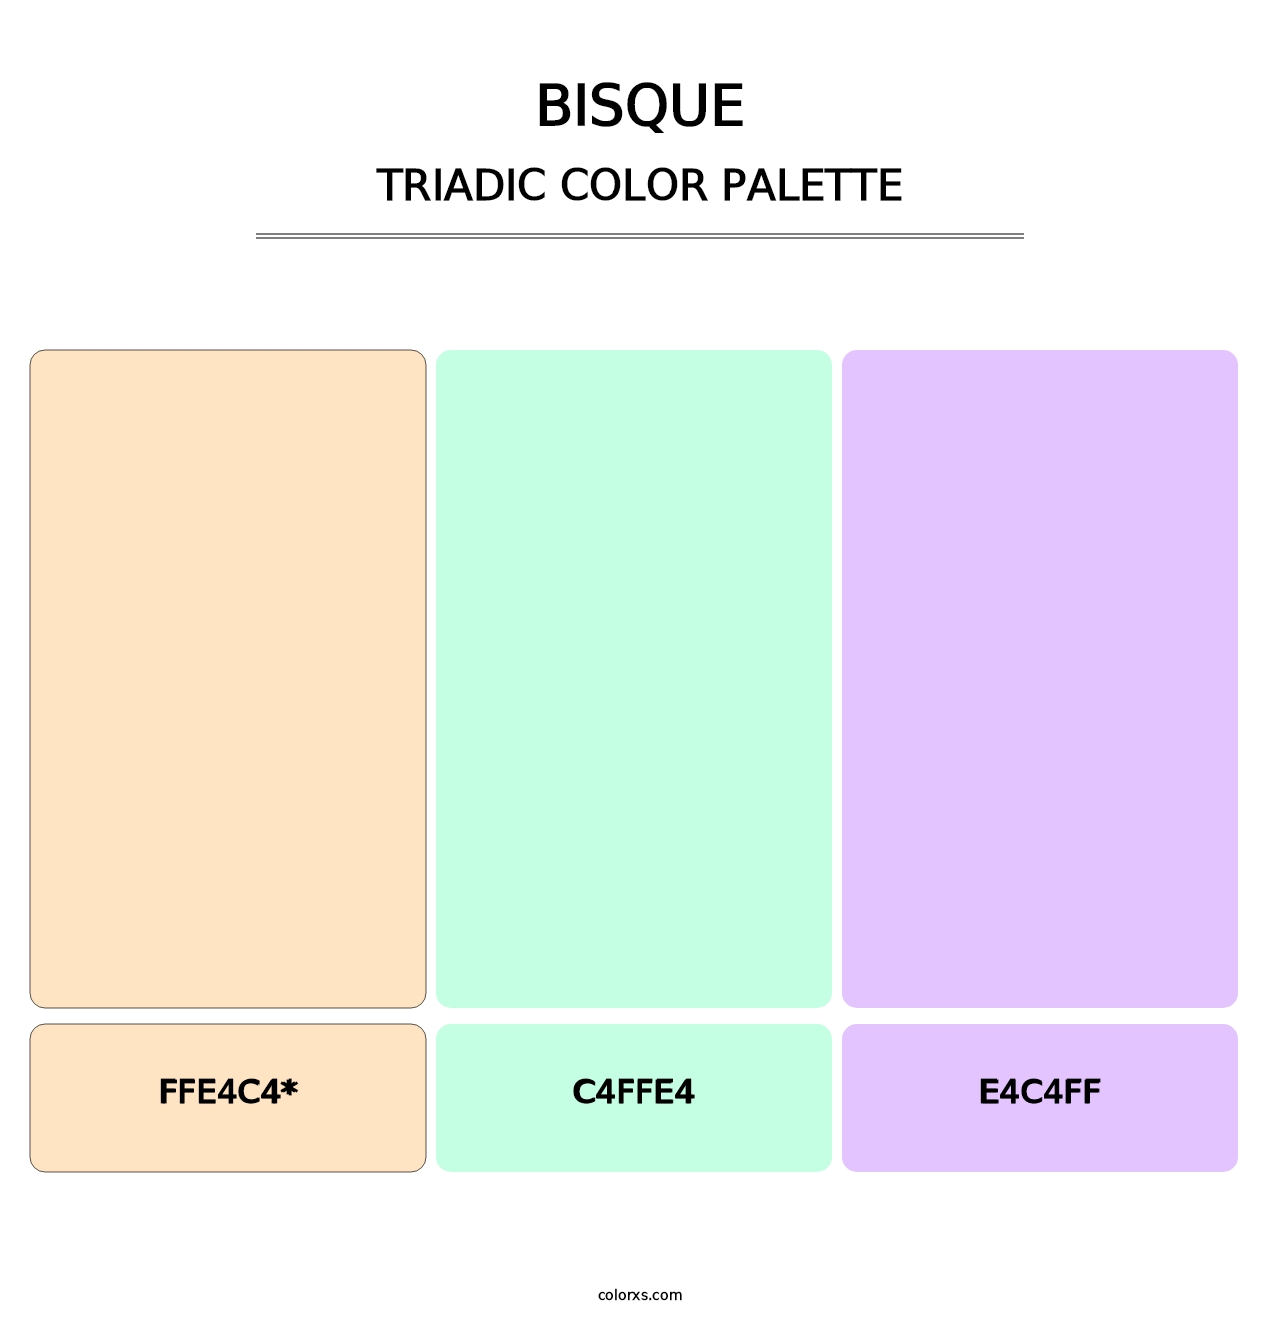 Bisque - Triadic Color Palette